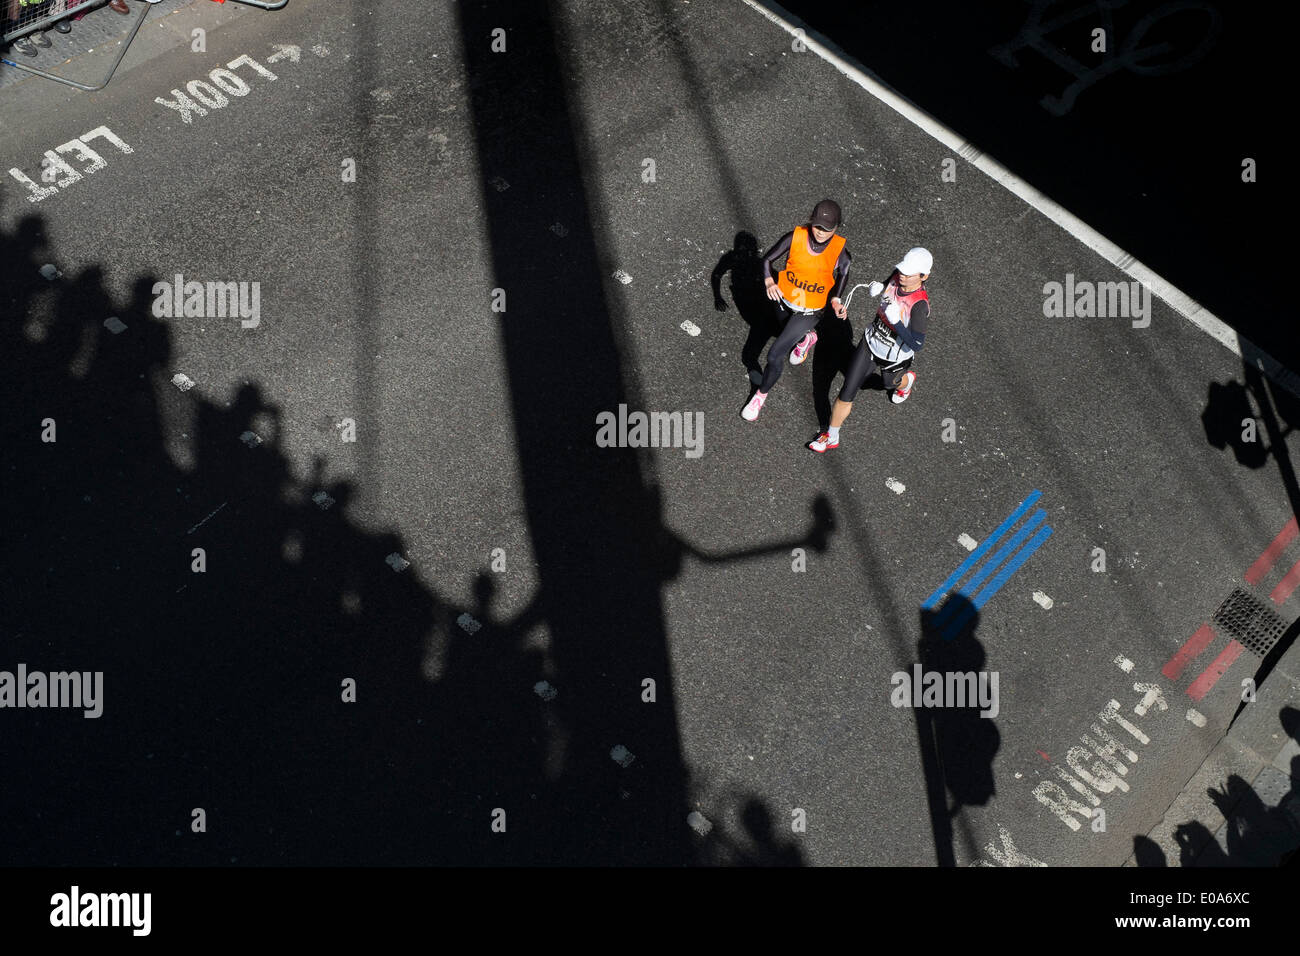 Wettbewerber in den London-Marathon 2014. Blinden und sehbehinderten Läufer mit ihrem guide Stockfoto